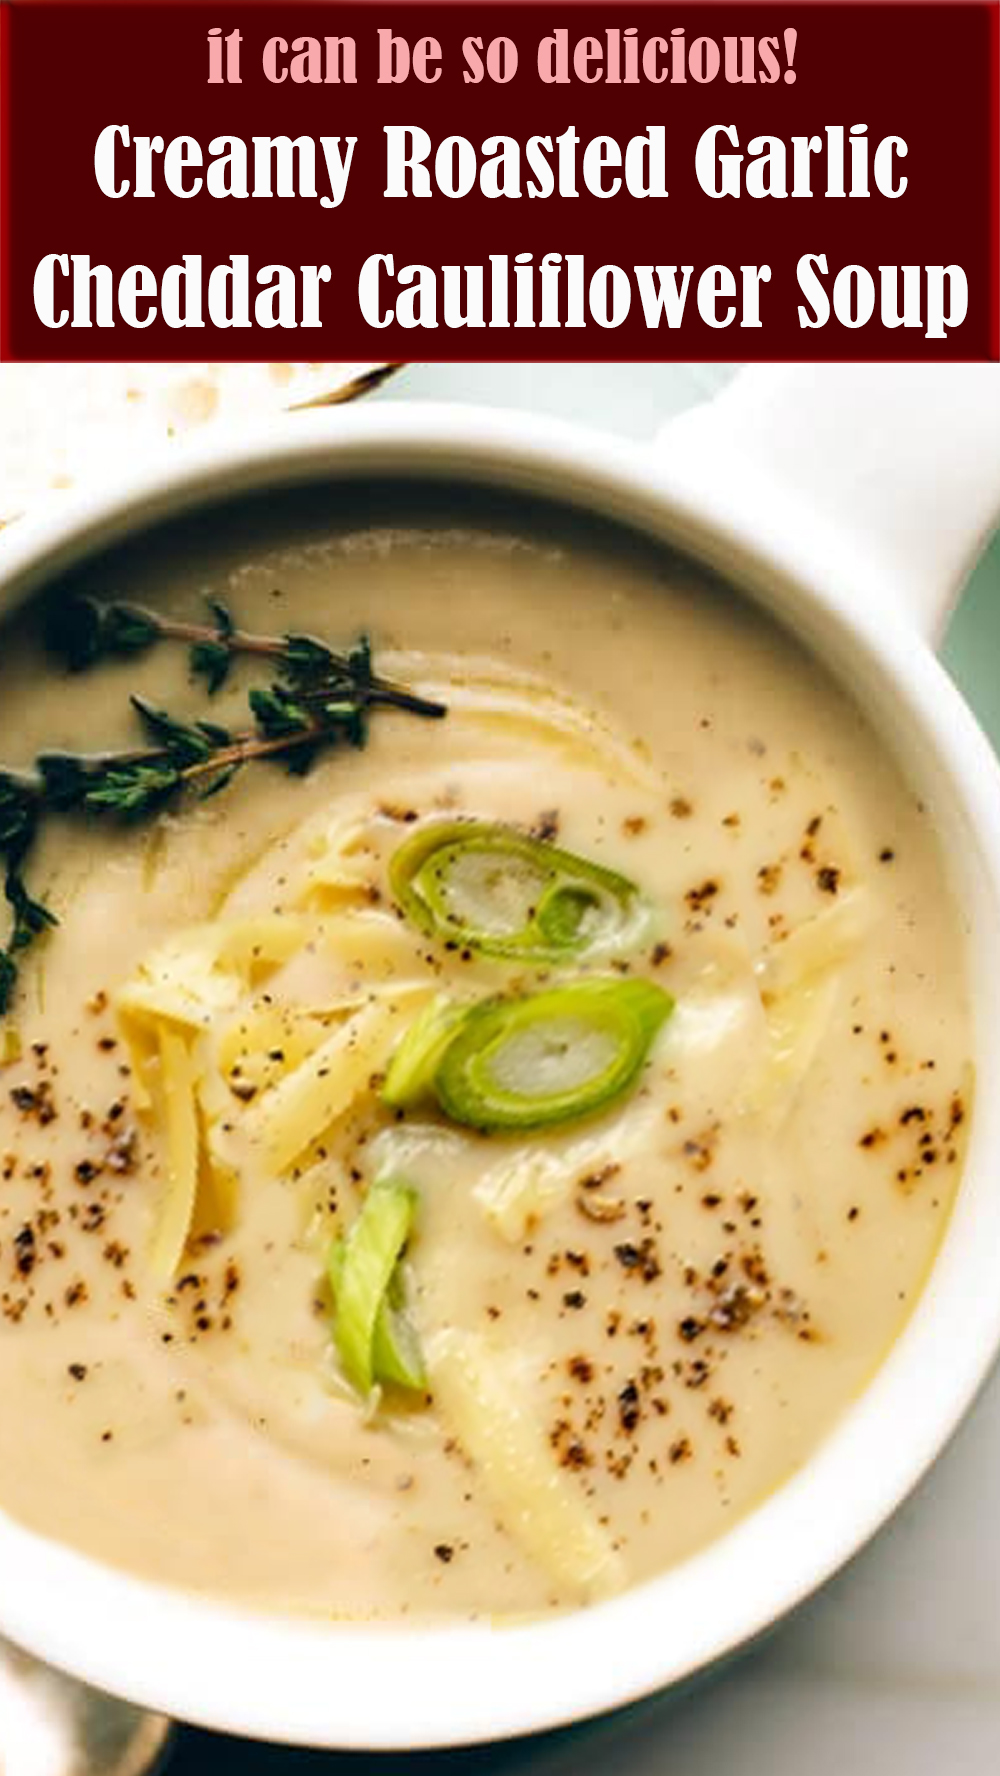 Creamy Roasted Garlic Cheddar Cauliflower Soup